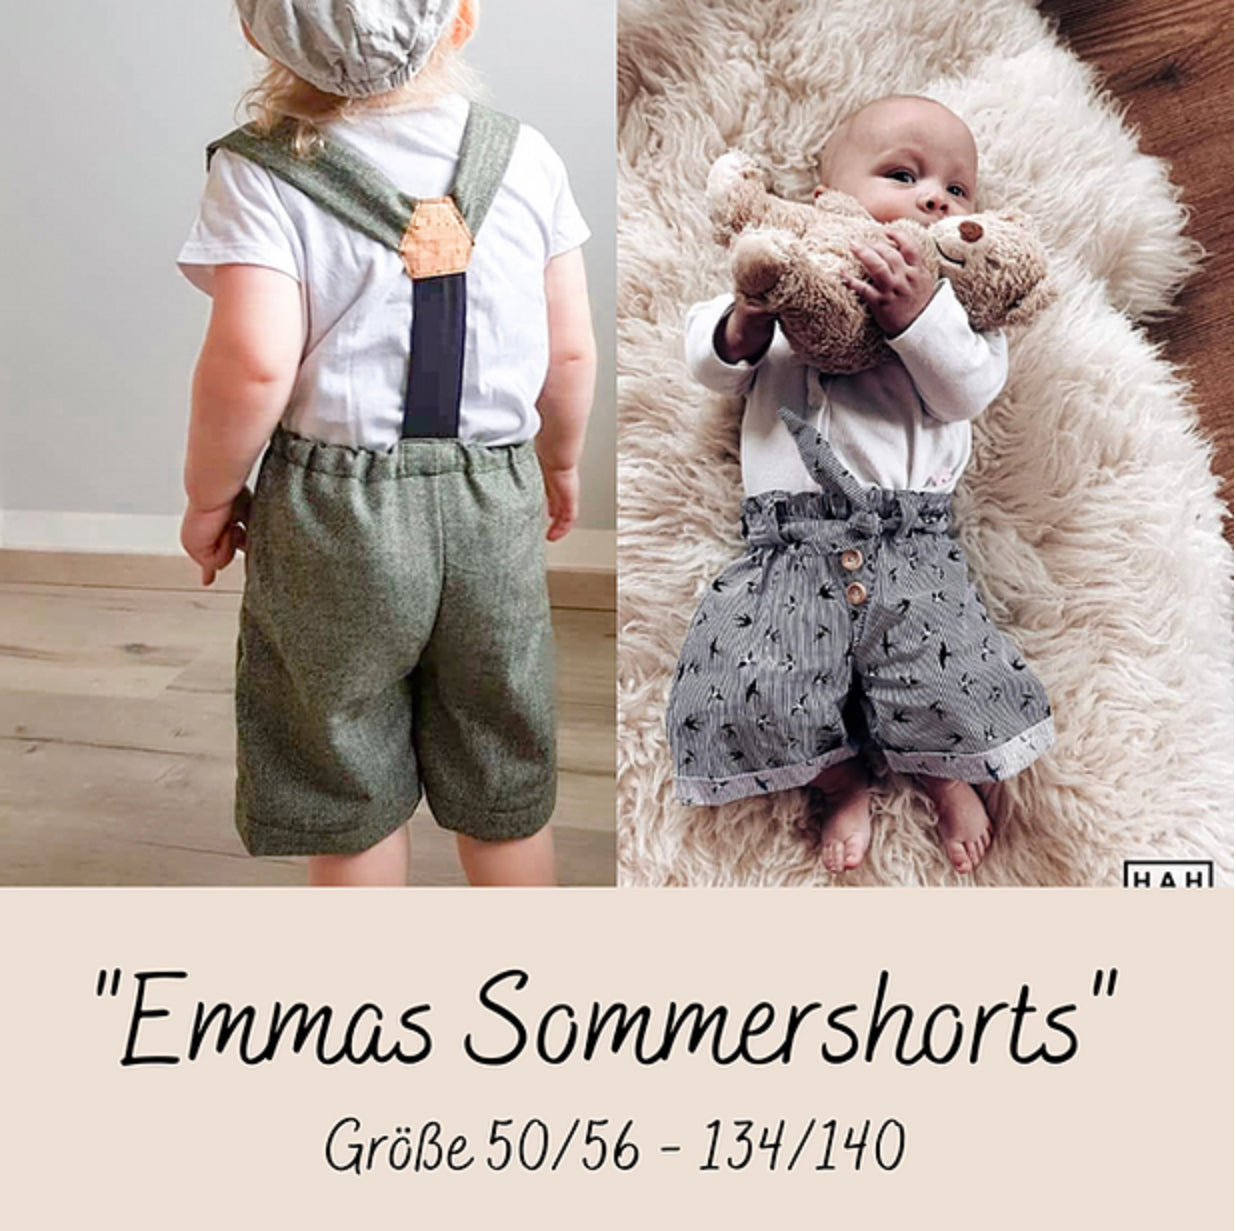 Tante Emmas Nähladen Ebook Schnittmuster "Emmas Sommershorts"